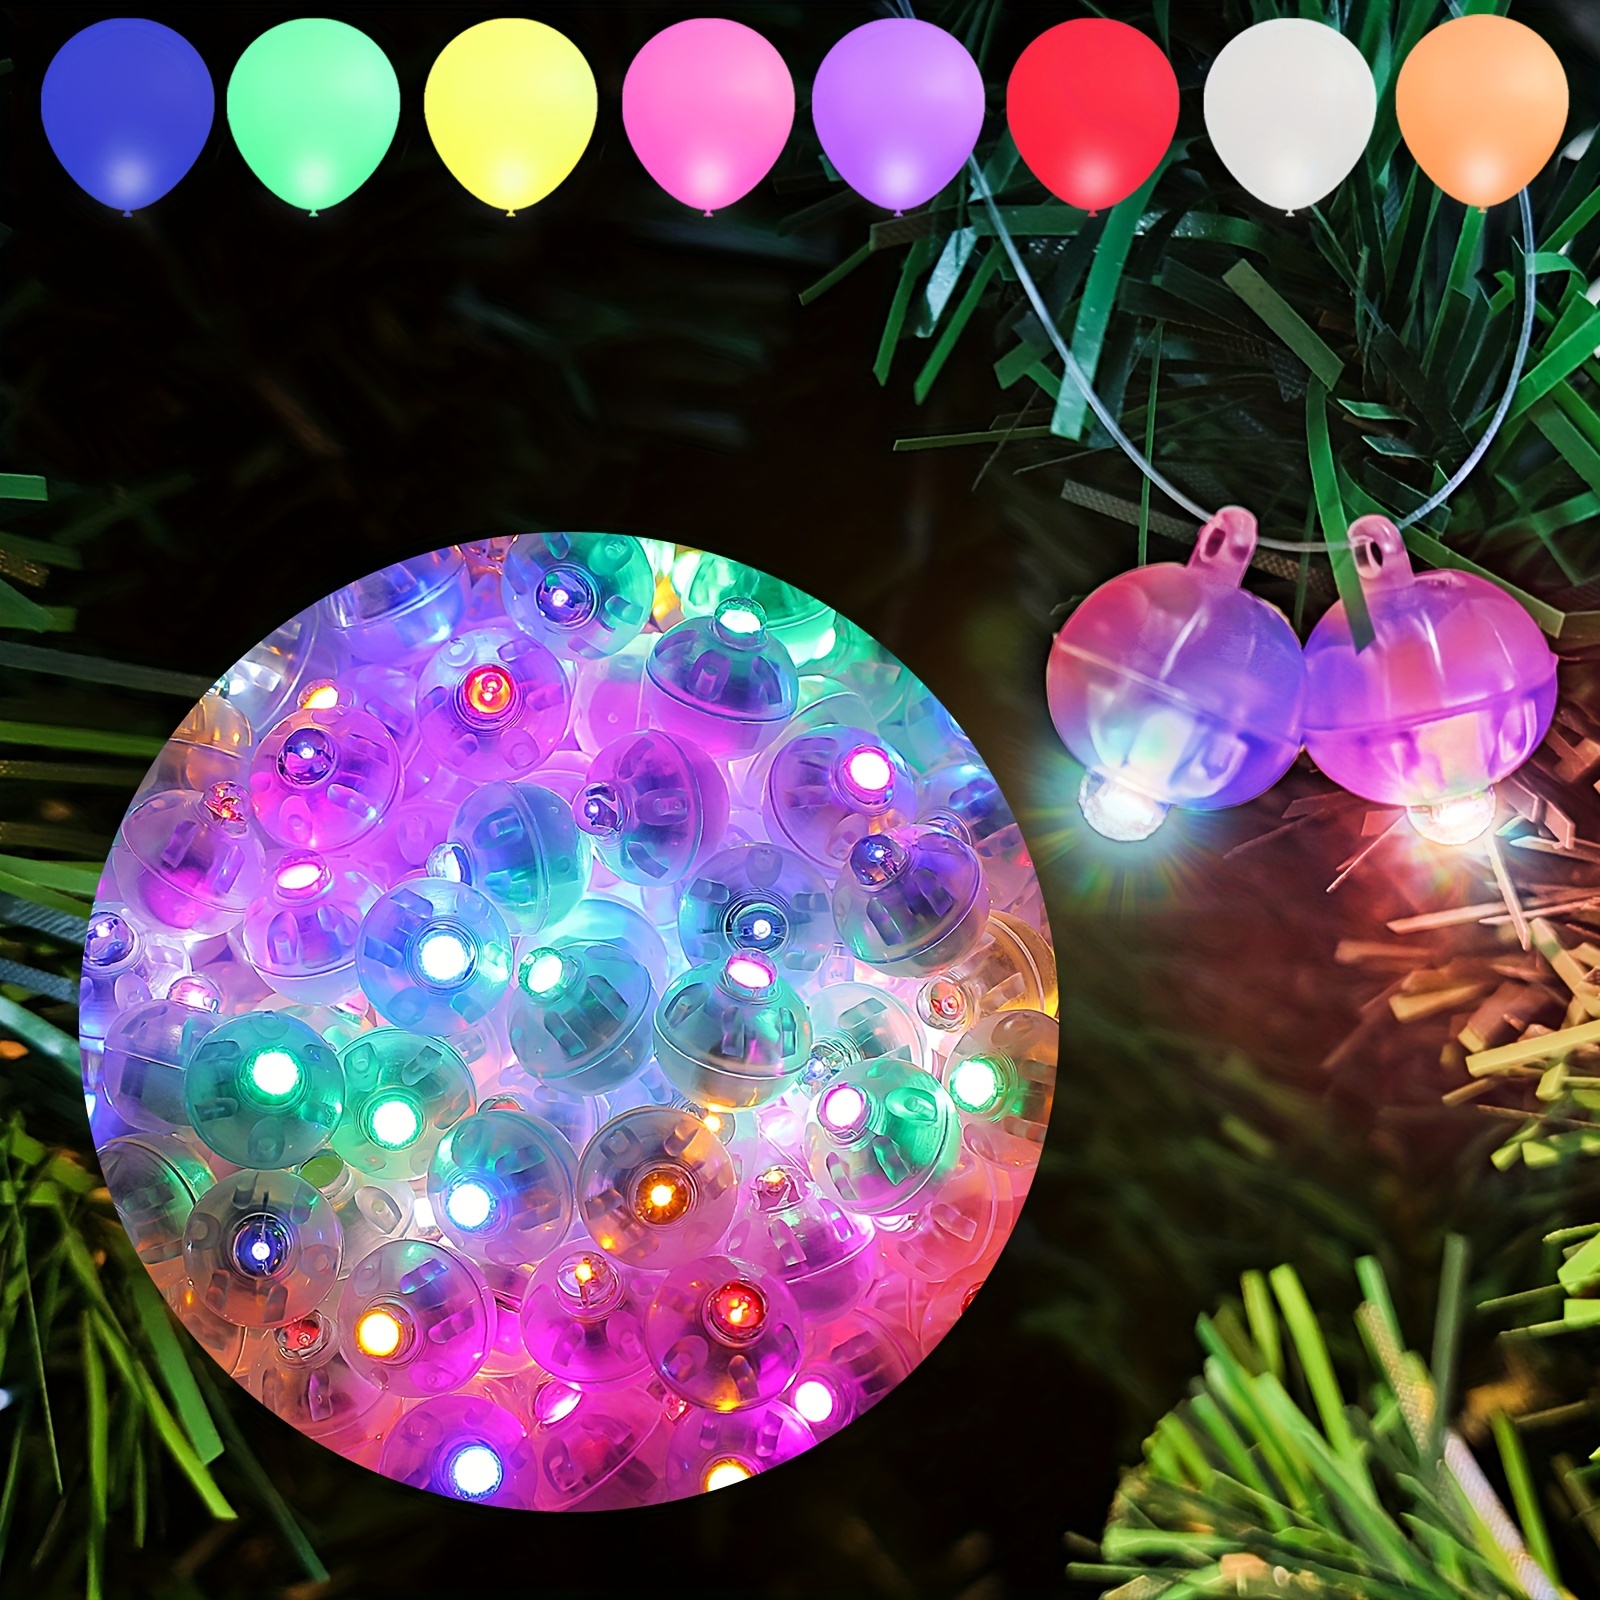 60 Ballon Néon Fluorescent, Ballon Fluorescent, Colorés Latex Ballons pour  Fête de La Lumière Noire, pour Anniversaire Baby Shower Mariage Halloween  Noël Décoration de Fête